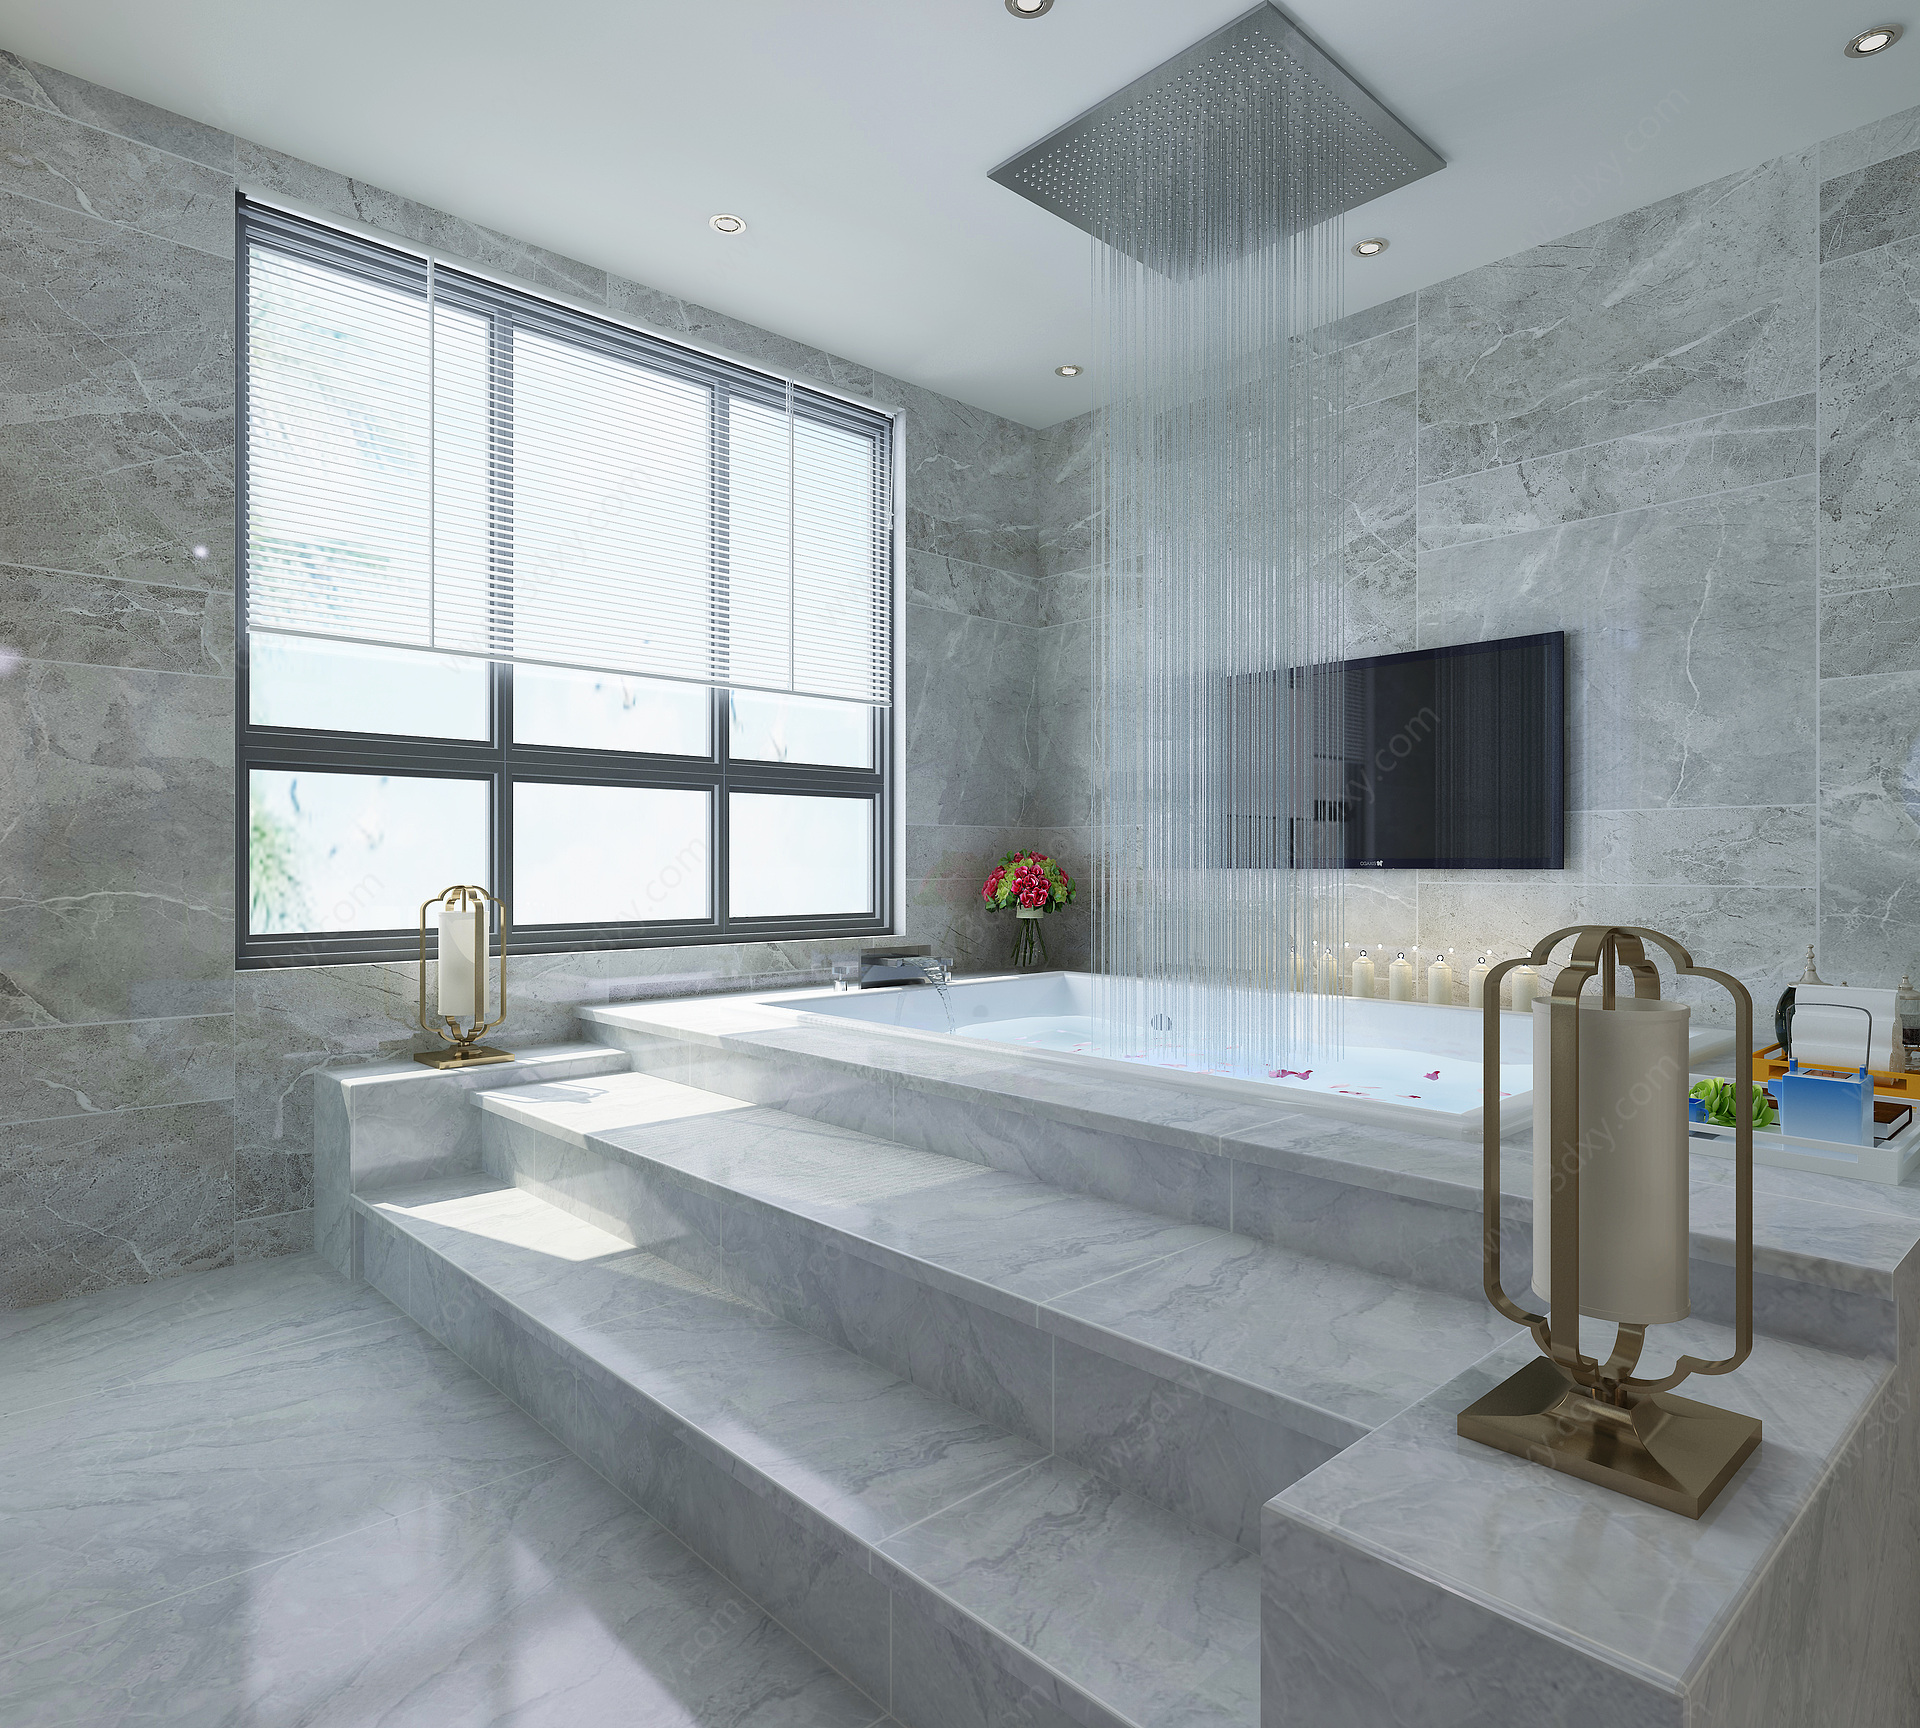 新中式酒店套房客厅浴池3D模型